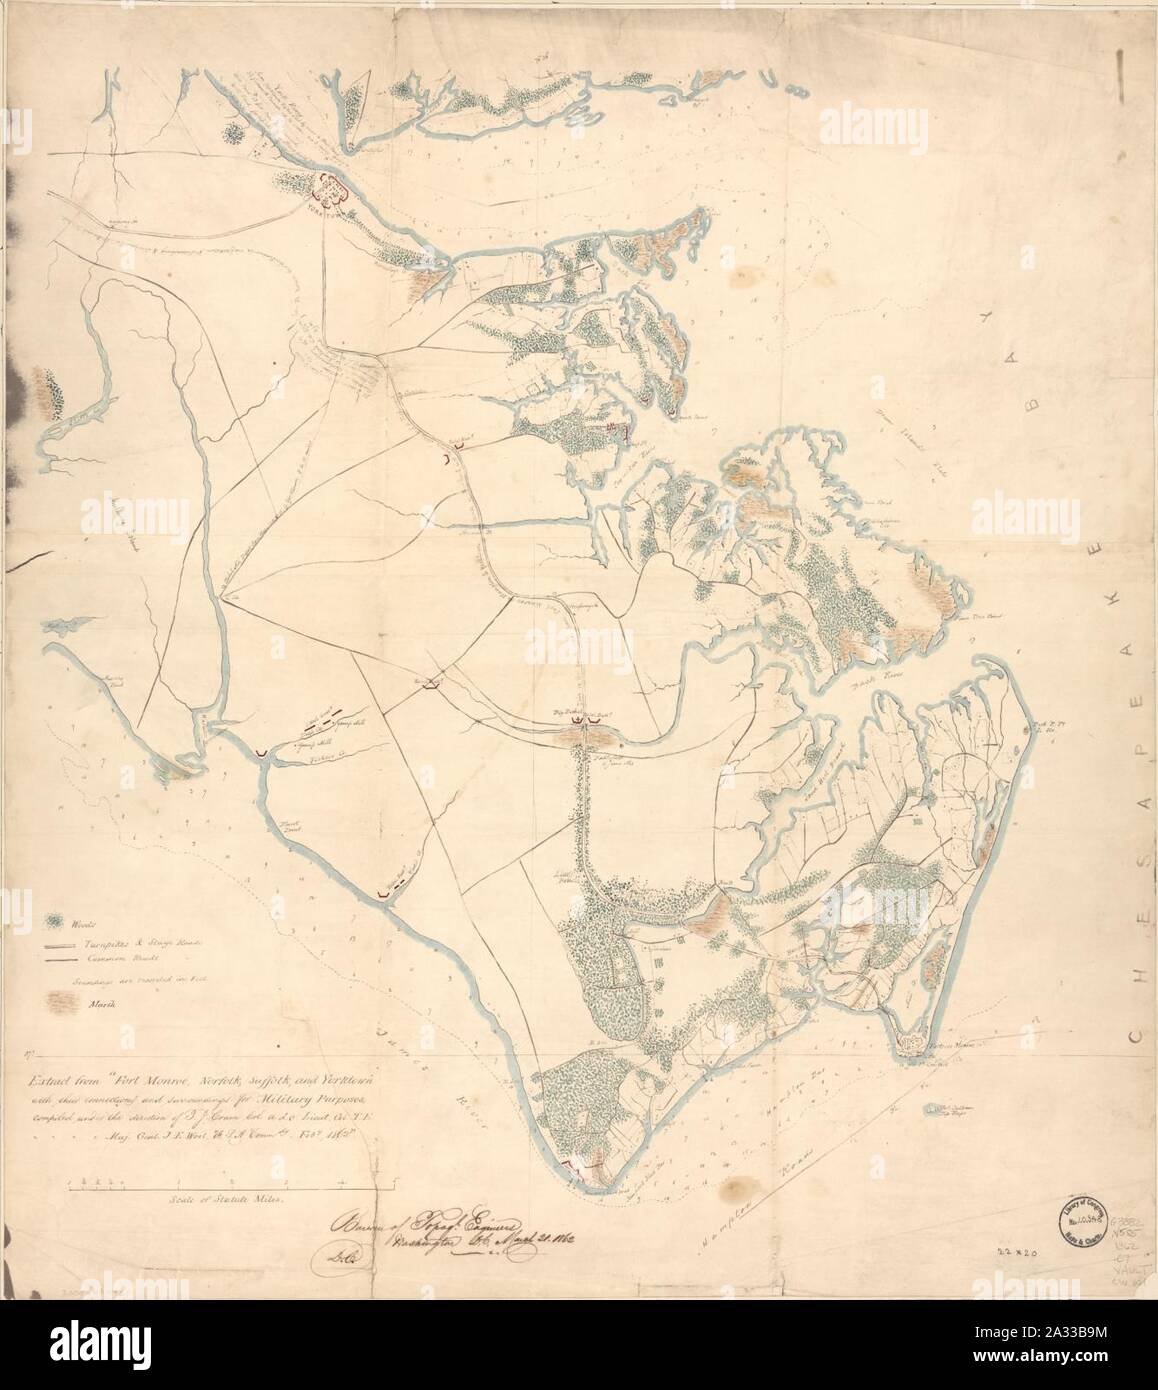 Extrait de Fort Monroe, Norfolk, Suffolk, et Yorktown, avec leurs connexions et environs pour des fins militaires Banque D'Images